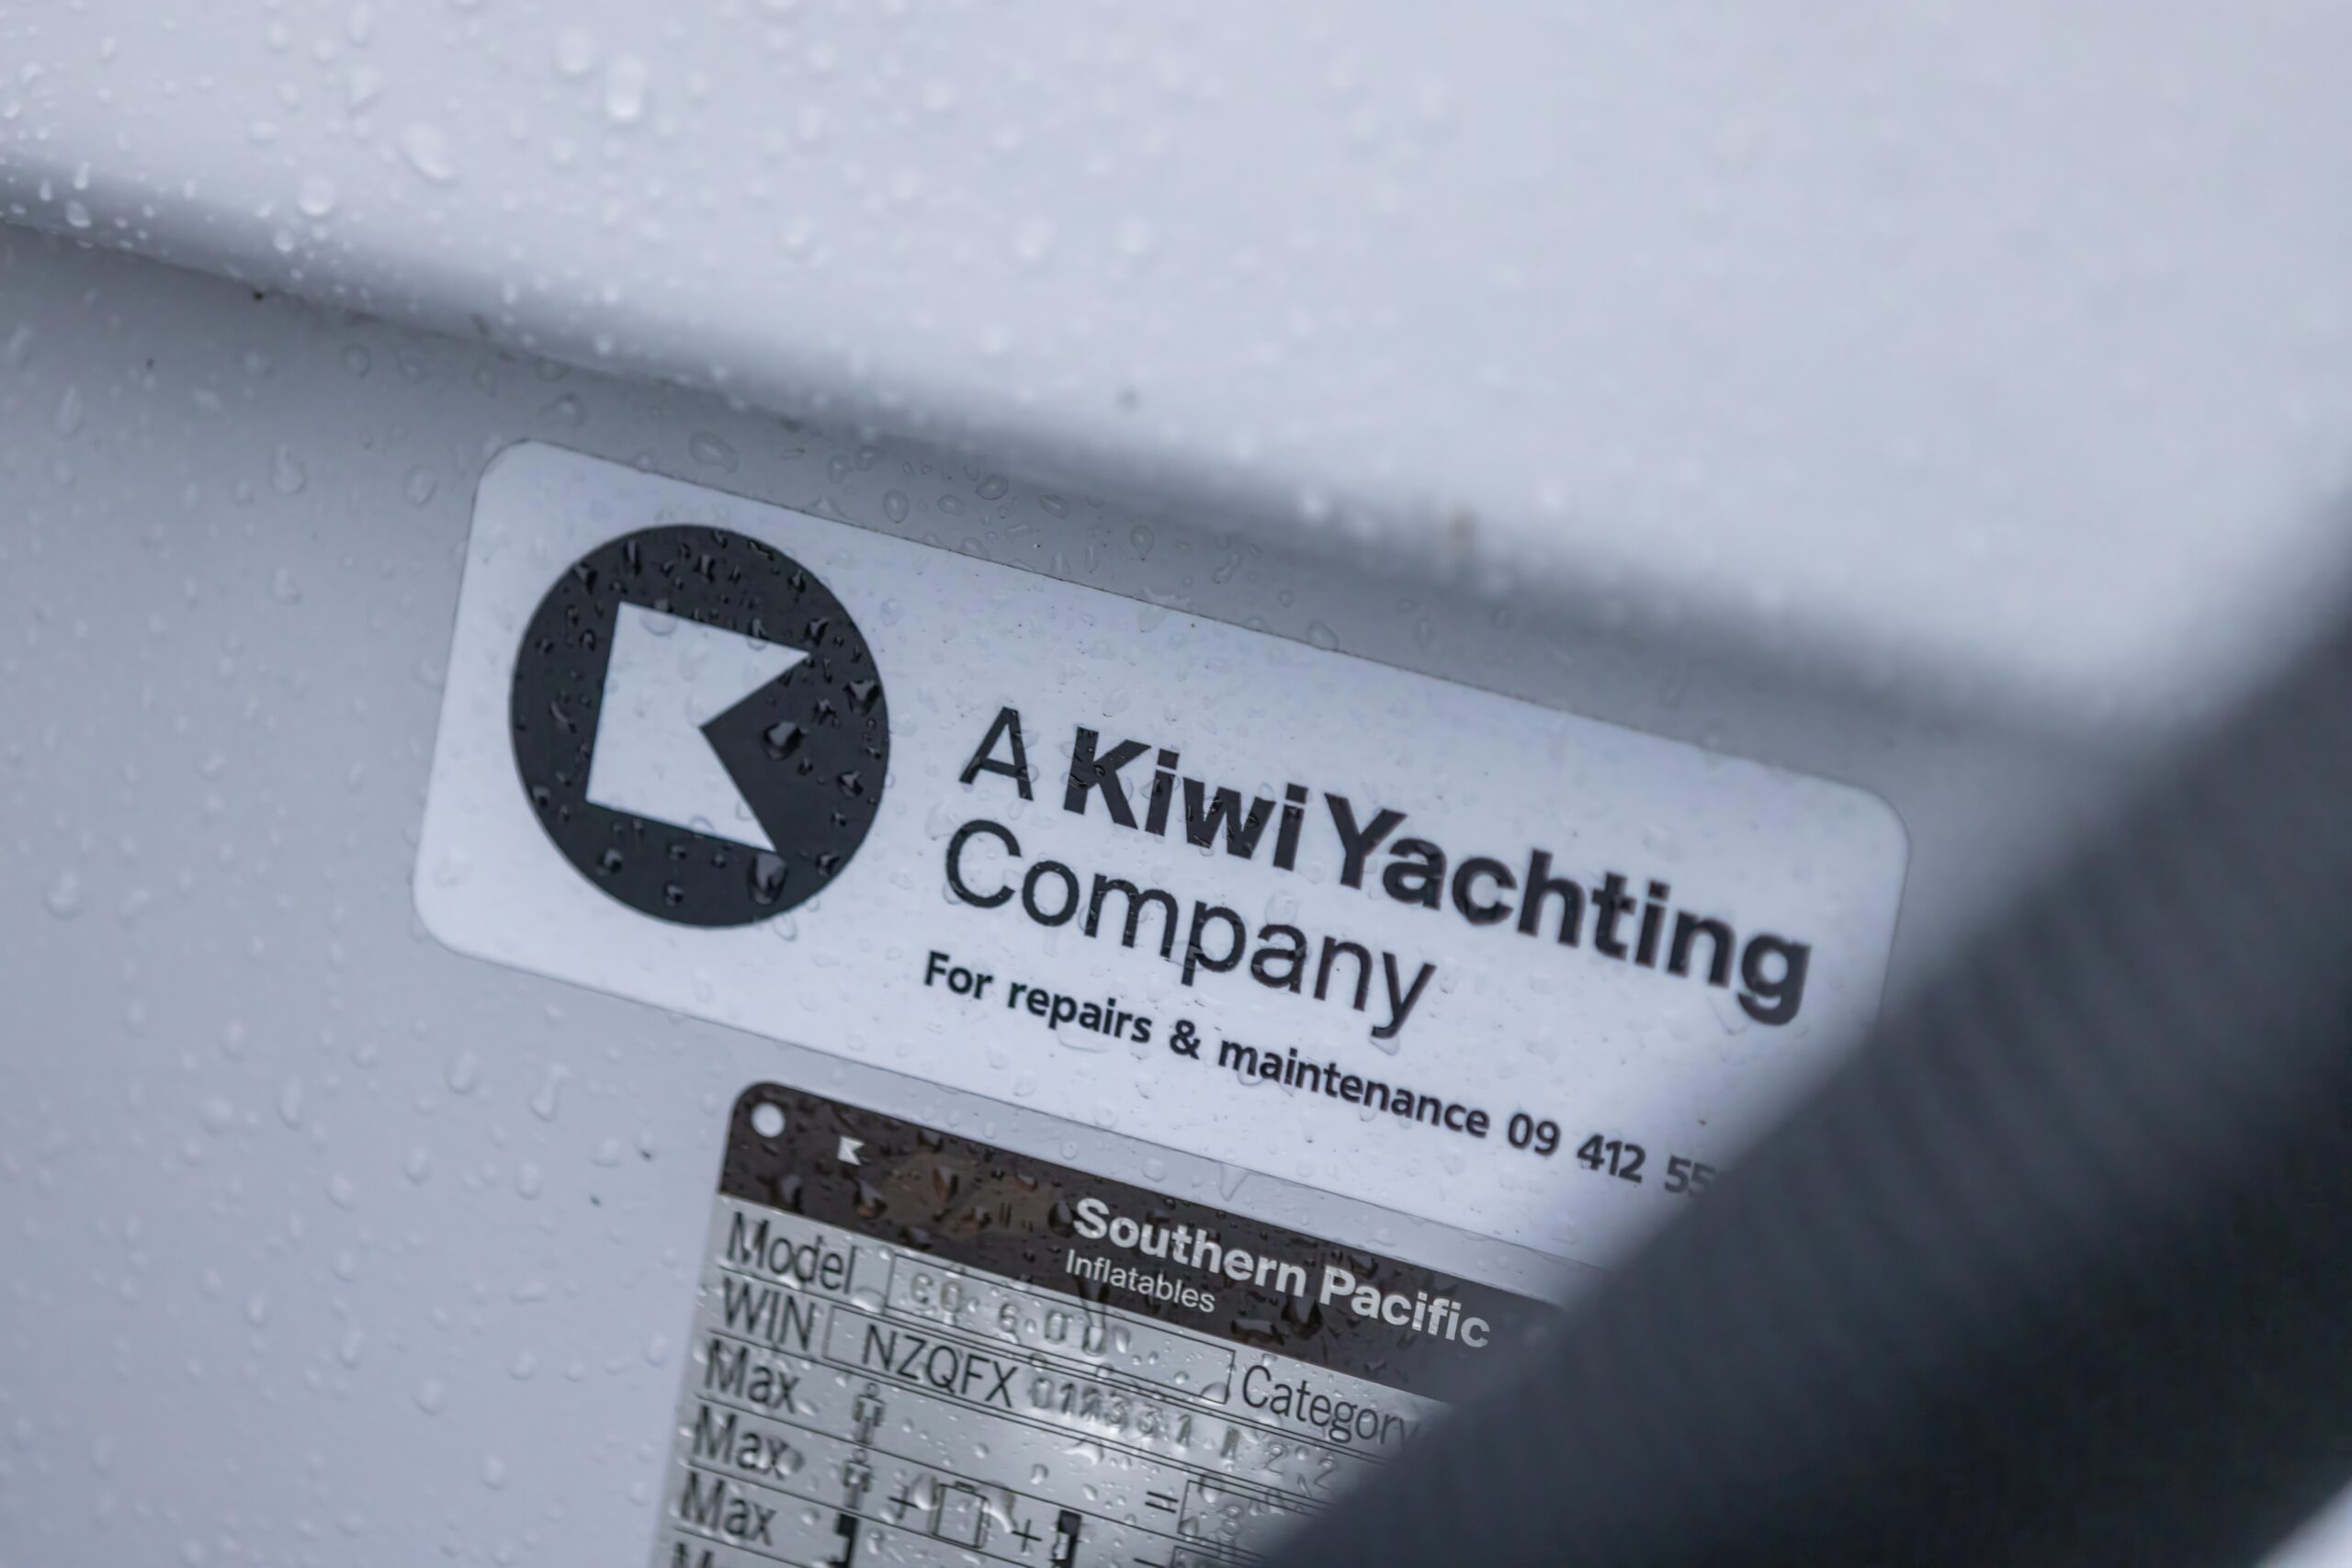 A Kiwi Yachting Company Logo